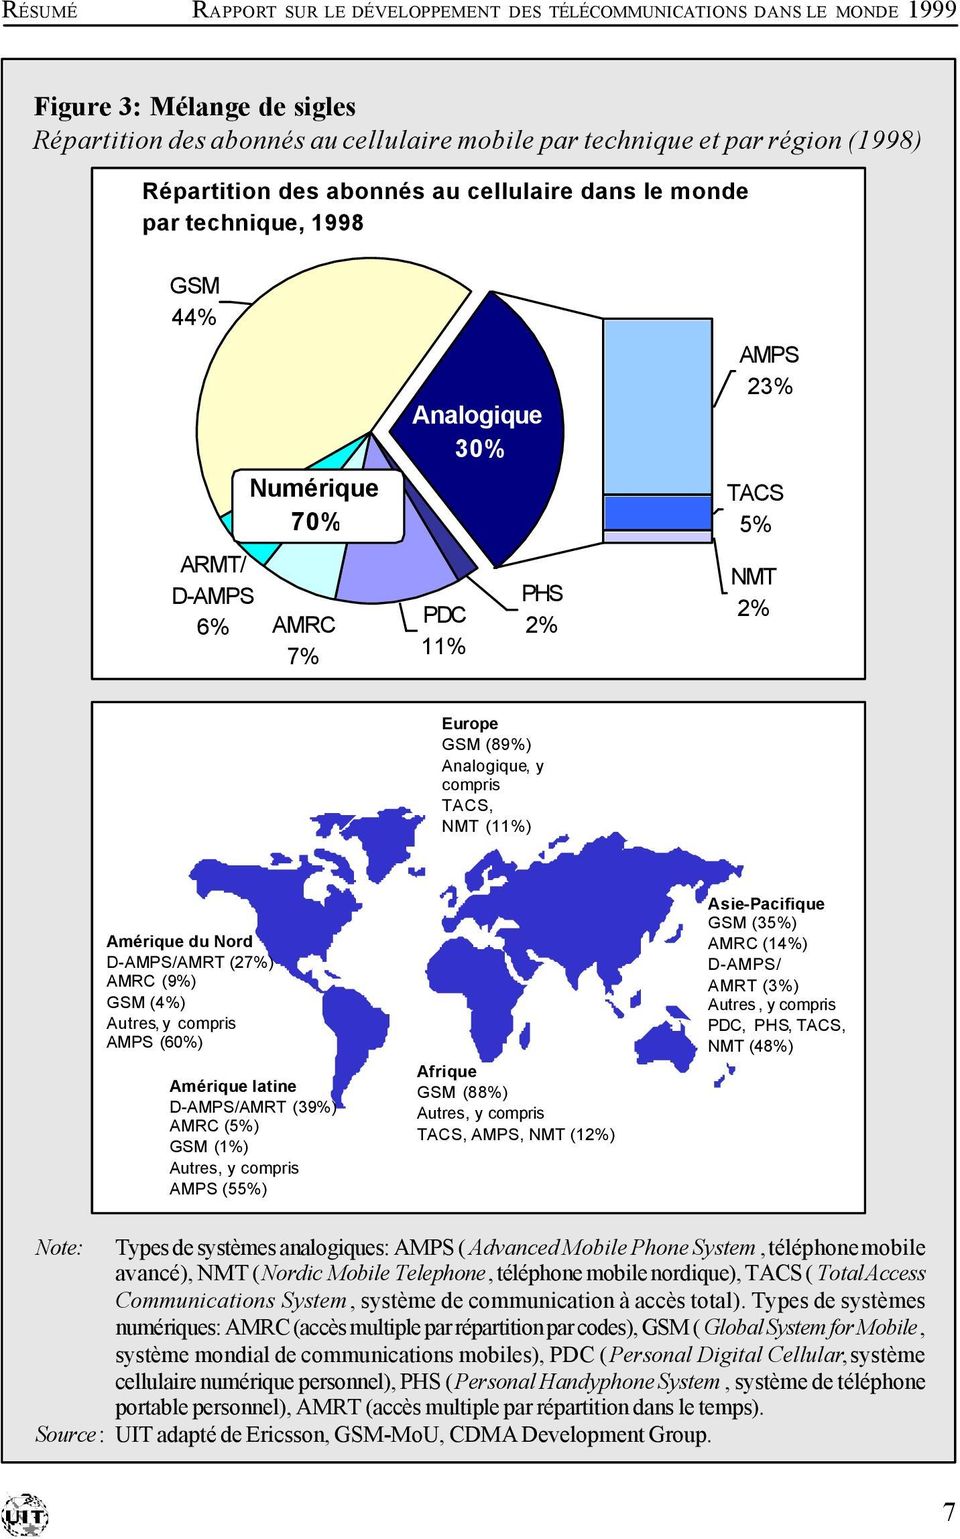 TACS, NMT (11%) Amérique du Nord D-AMPS/AMRT (27%) AMRC (9%) GSM (4%) Autres, y compris AMPS (60%) Amérique latine D-AMPS/AMRT (39%) AMRC (5%) GSM (1%) Autres, y compris AMPS (55%) Afrique GSM (88%)